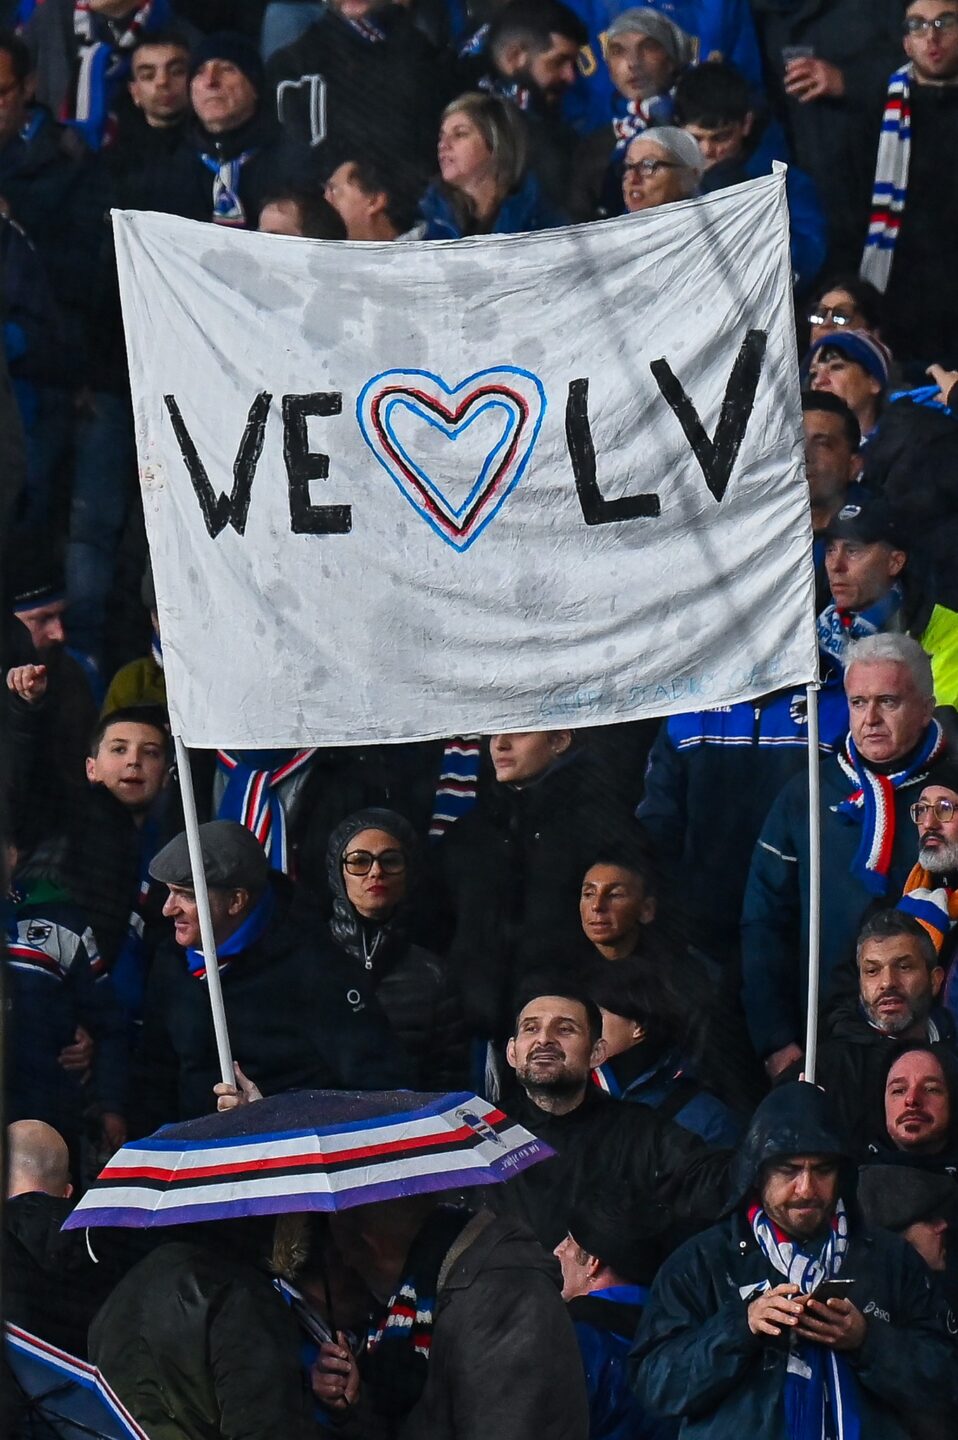 "We love L.V."